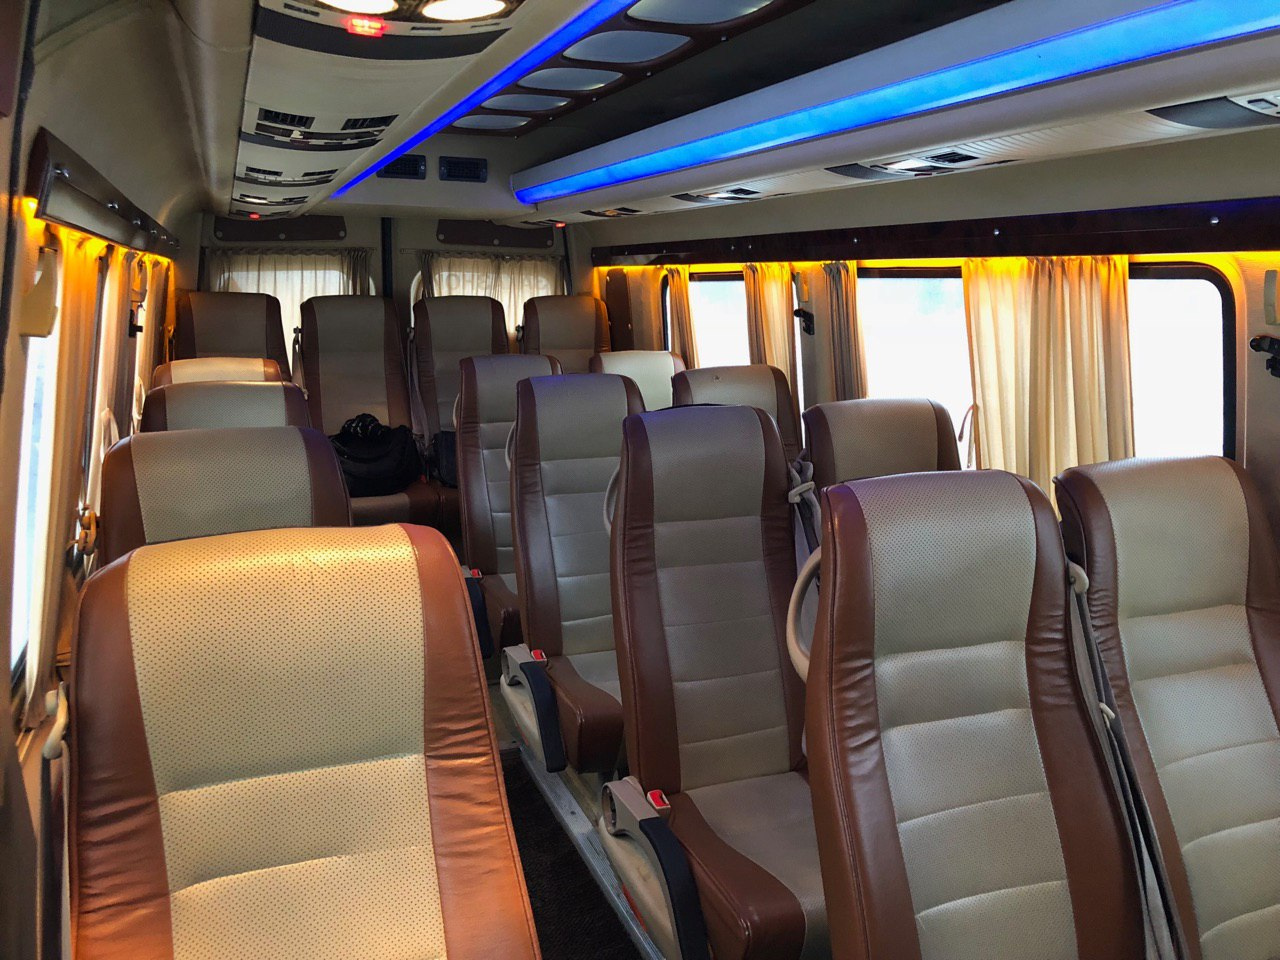 Комфортабельные салоны автобусов позволят удобно расположиться во время поездки